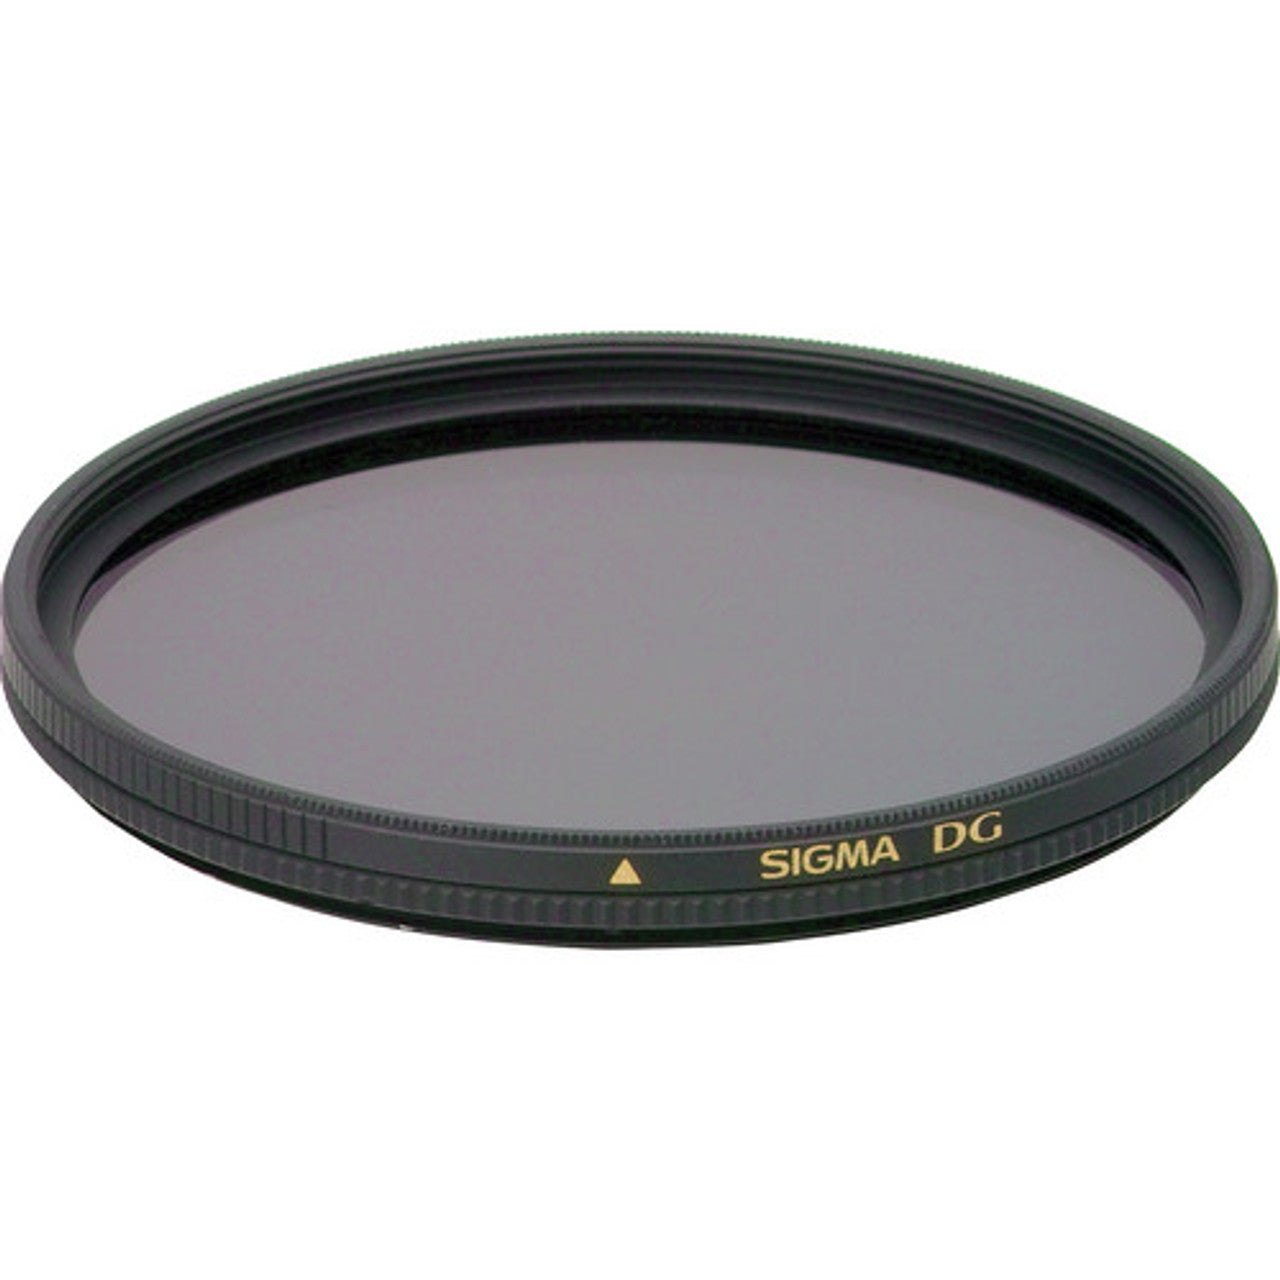 Sigma DG Circular Polarizing Filter - 86mm